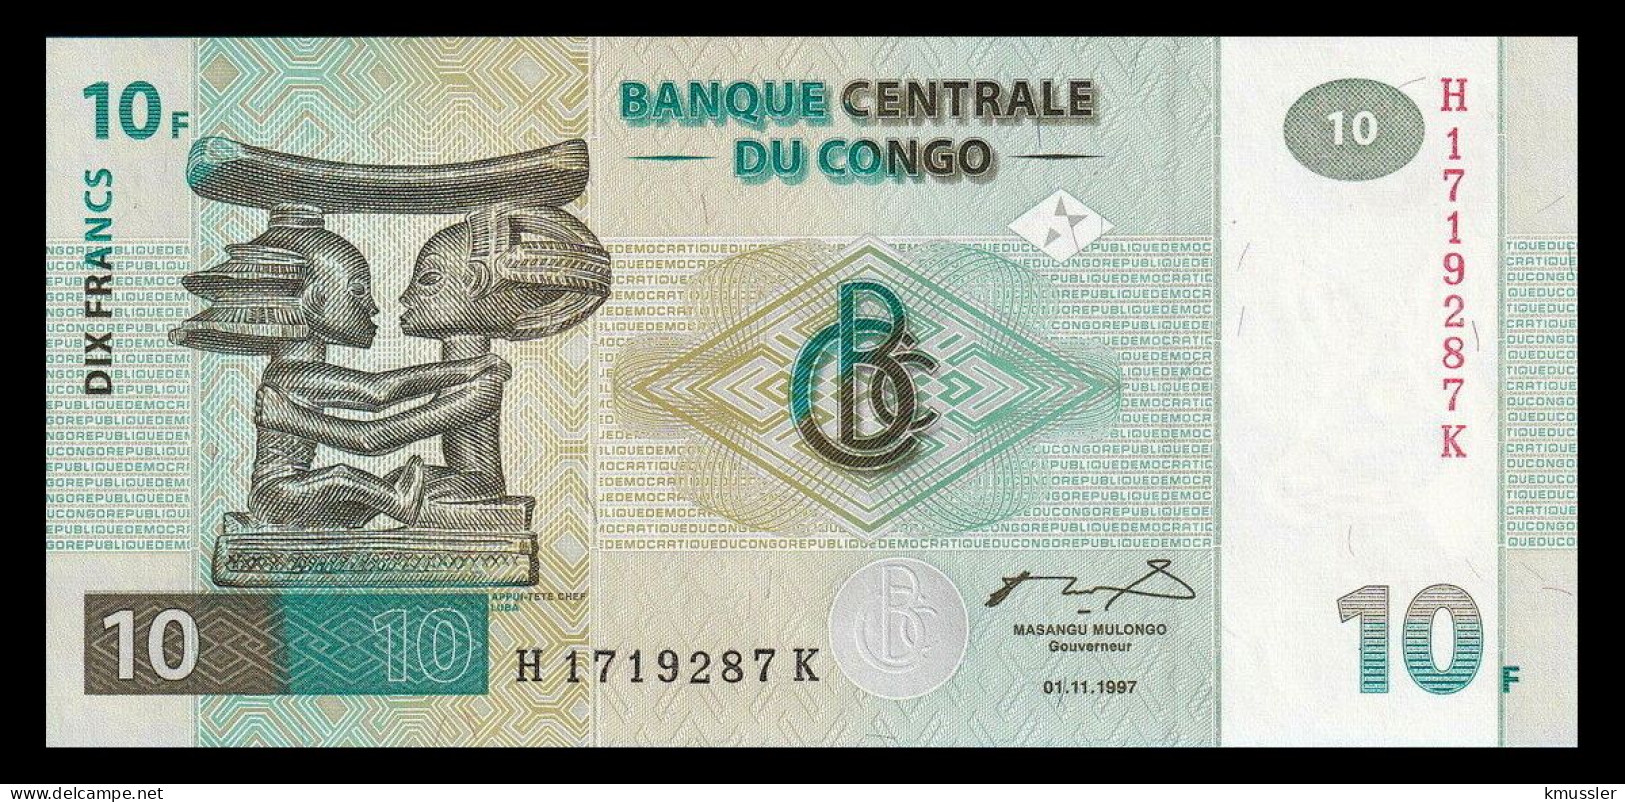 # # # Banknote Kongo (Congo) 10 Francs 1997 (P-87B) 1997 HdM UNC # # # - República Democrática Del Congo & Zaire